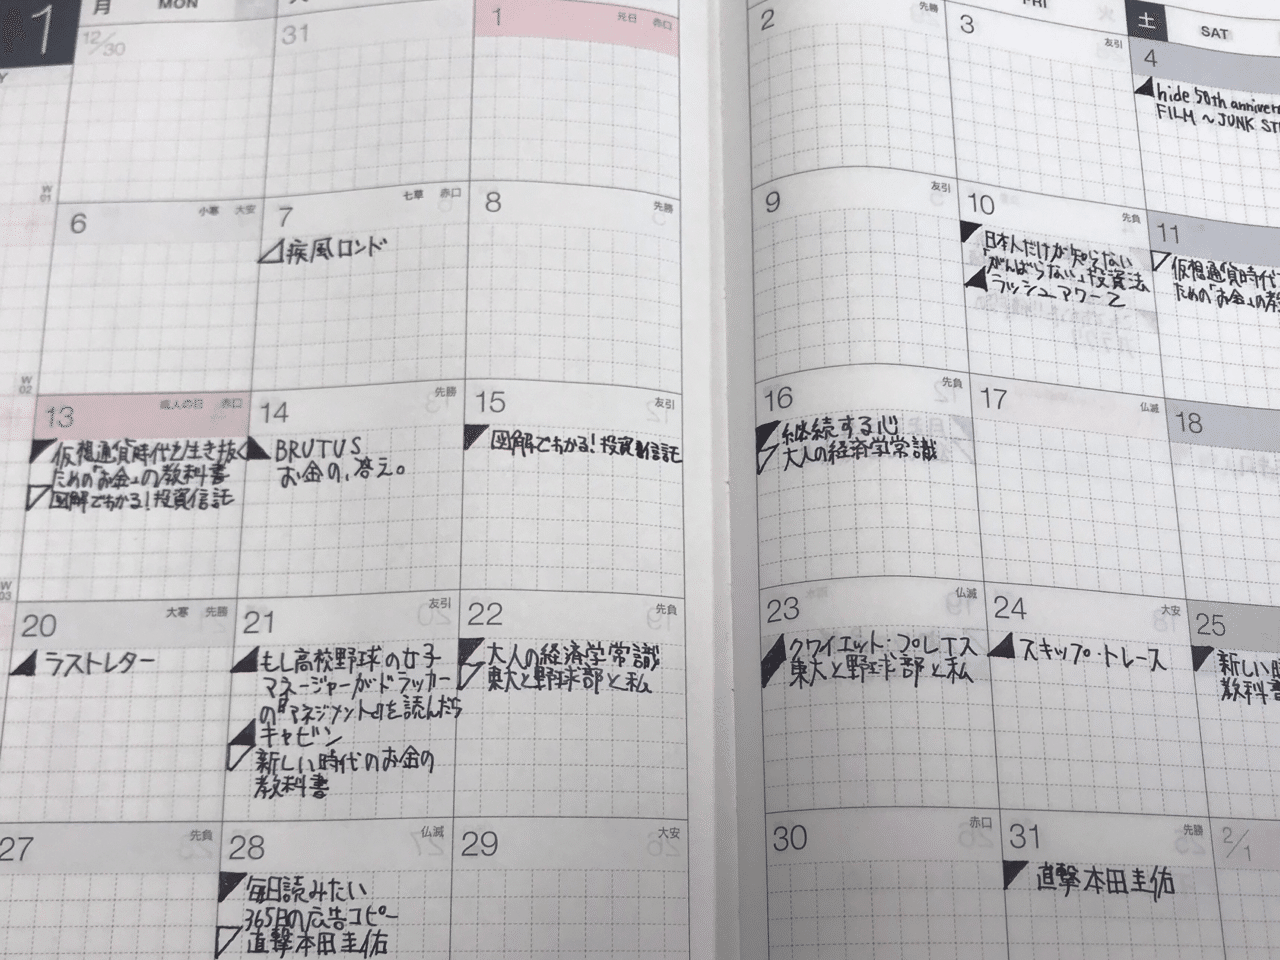 僕のほぼ日手帳 カズン の使い方 じゅんいち Ecマネージャー 金沢 Note